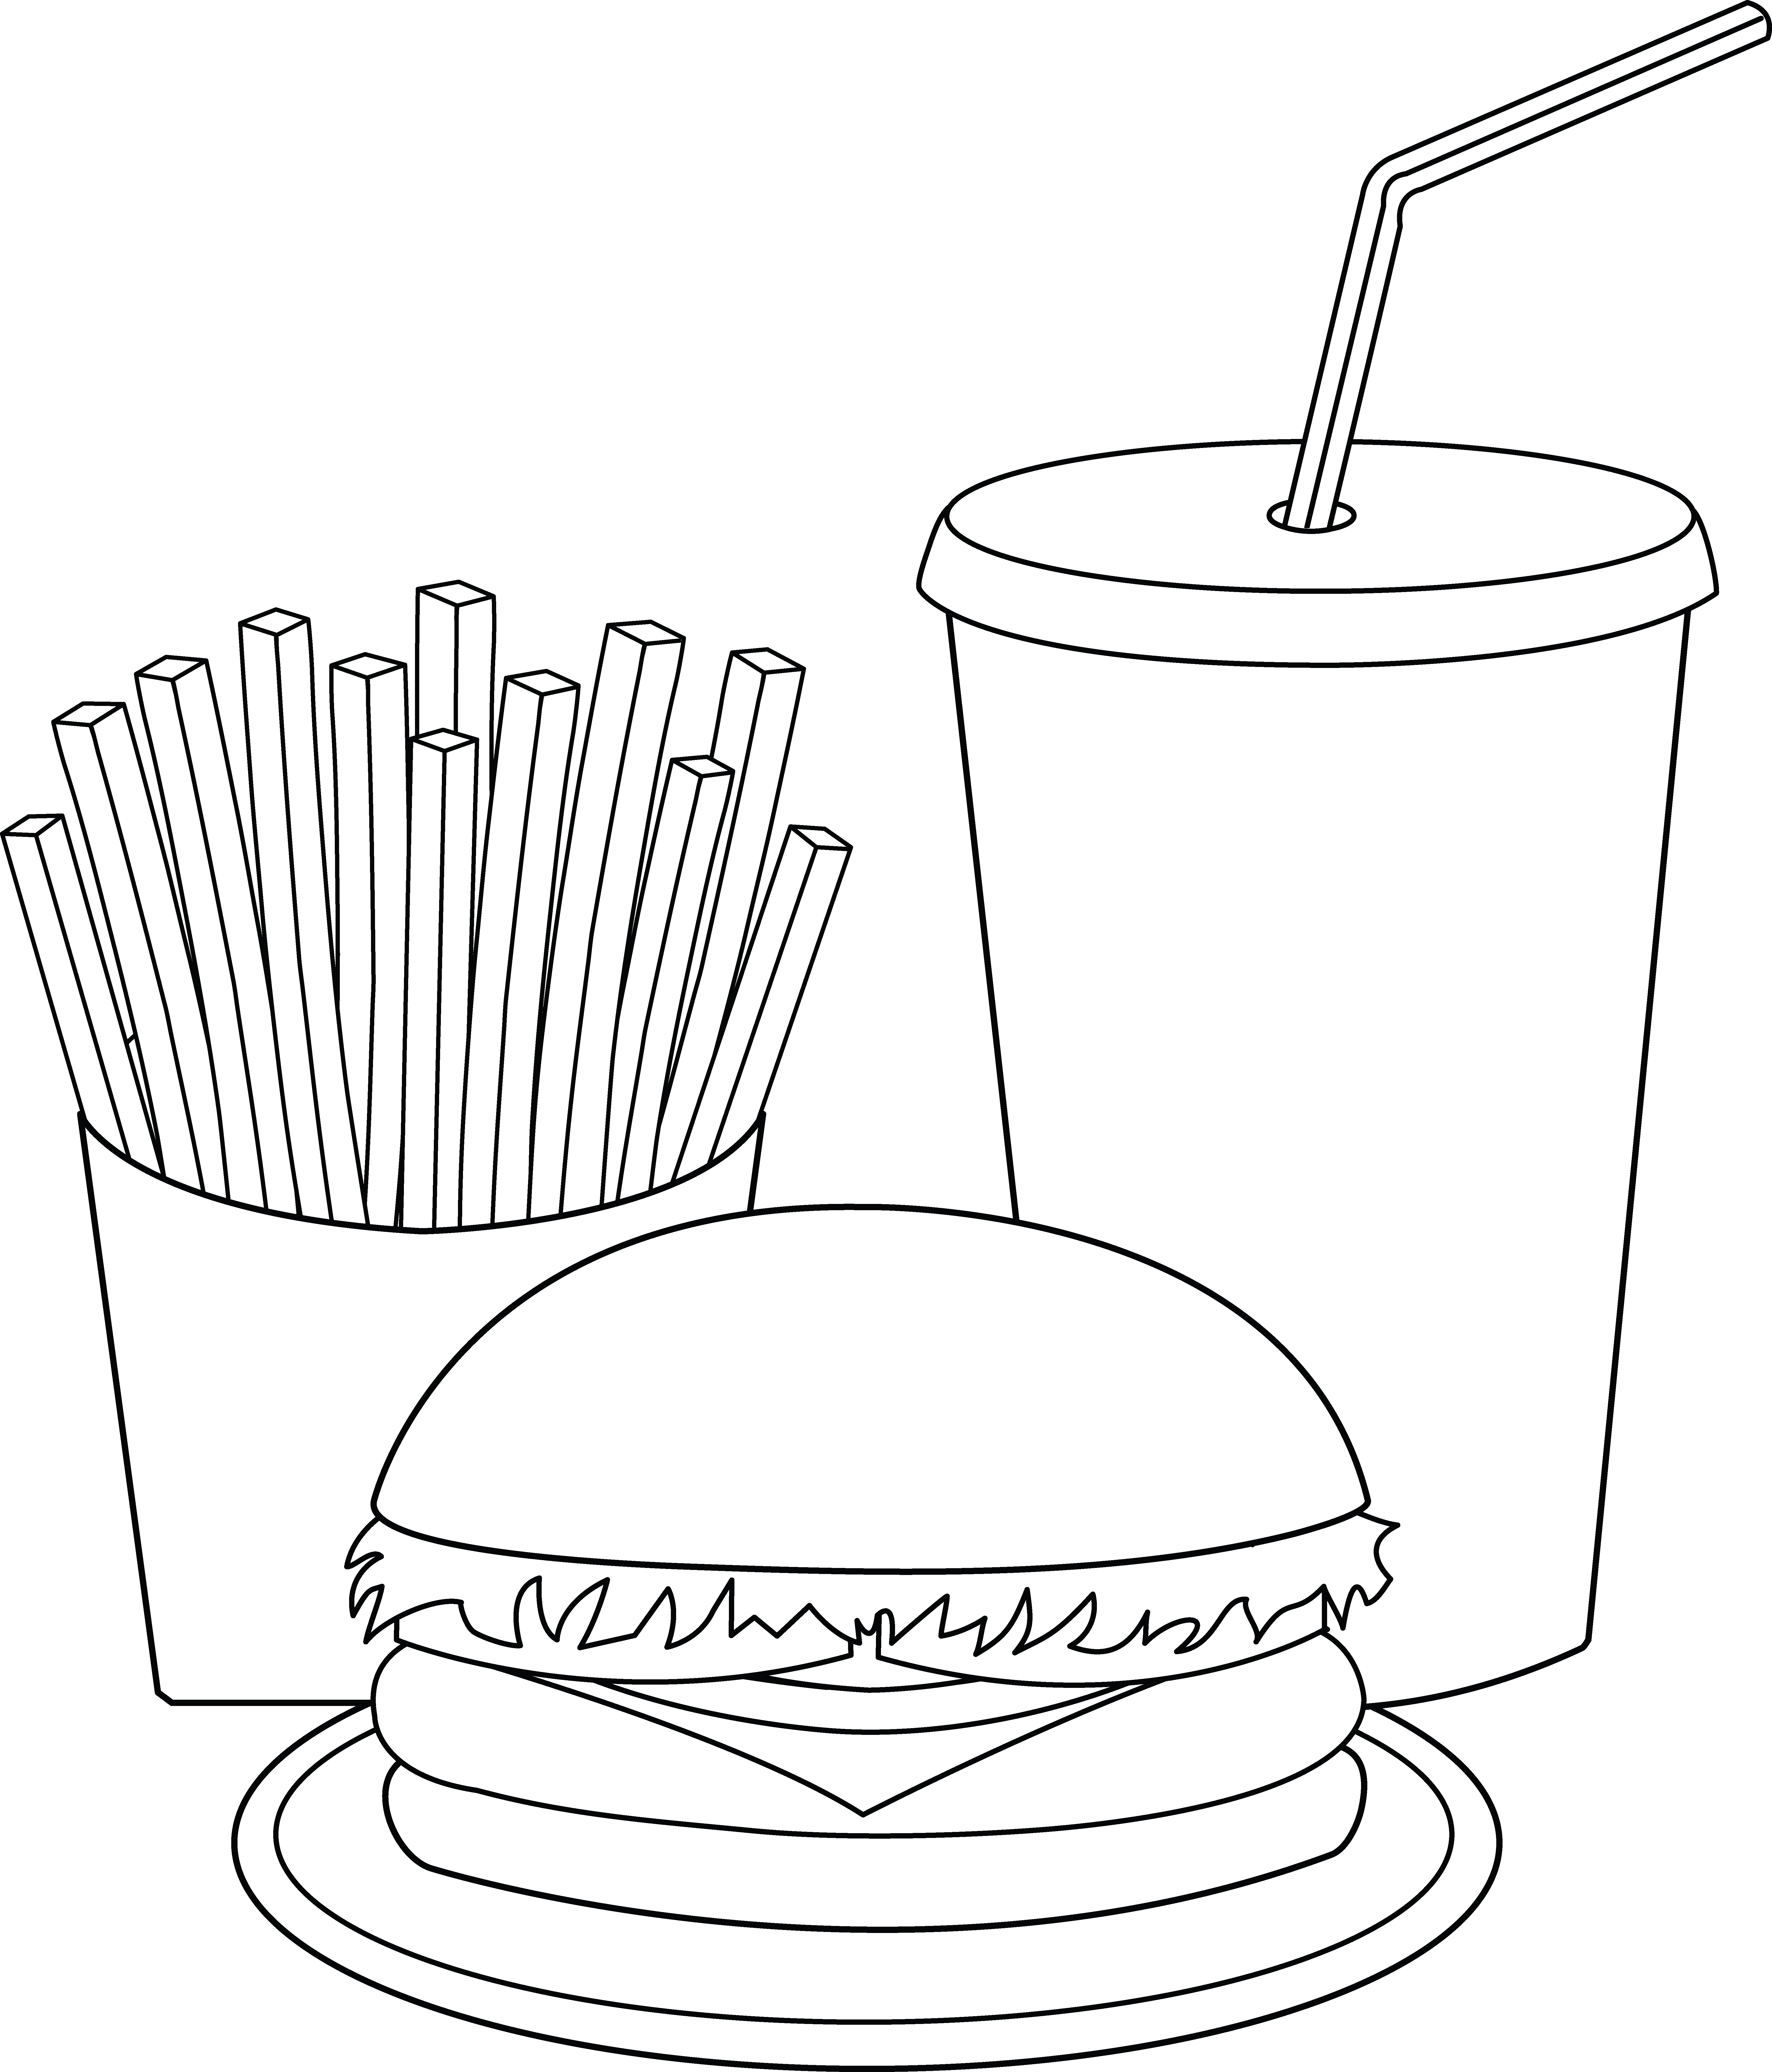 hamburger-ausmalbild-0016-q1